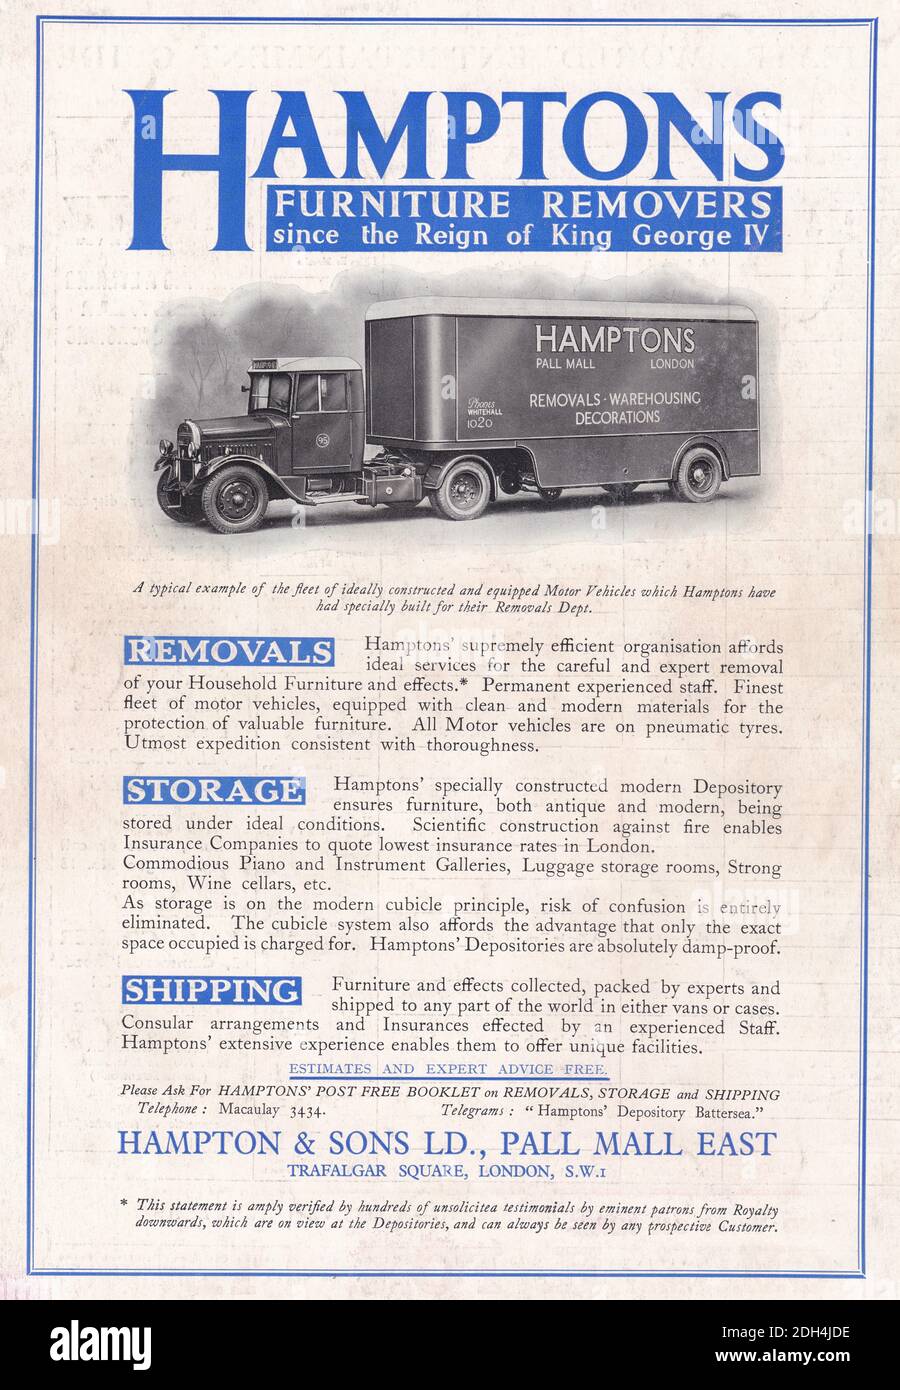 Publicité vintage pour Hampton & Sons ltd, Pall Mall, Trafalgar Square, Londres, SW1. publicité des années 1930 Banque D'Images